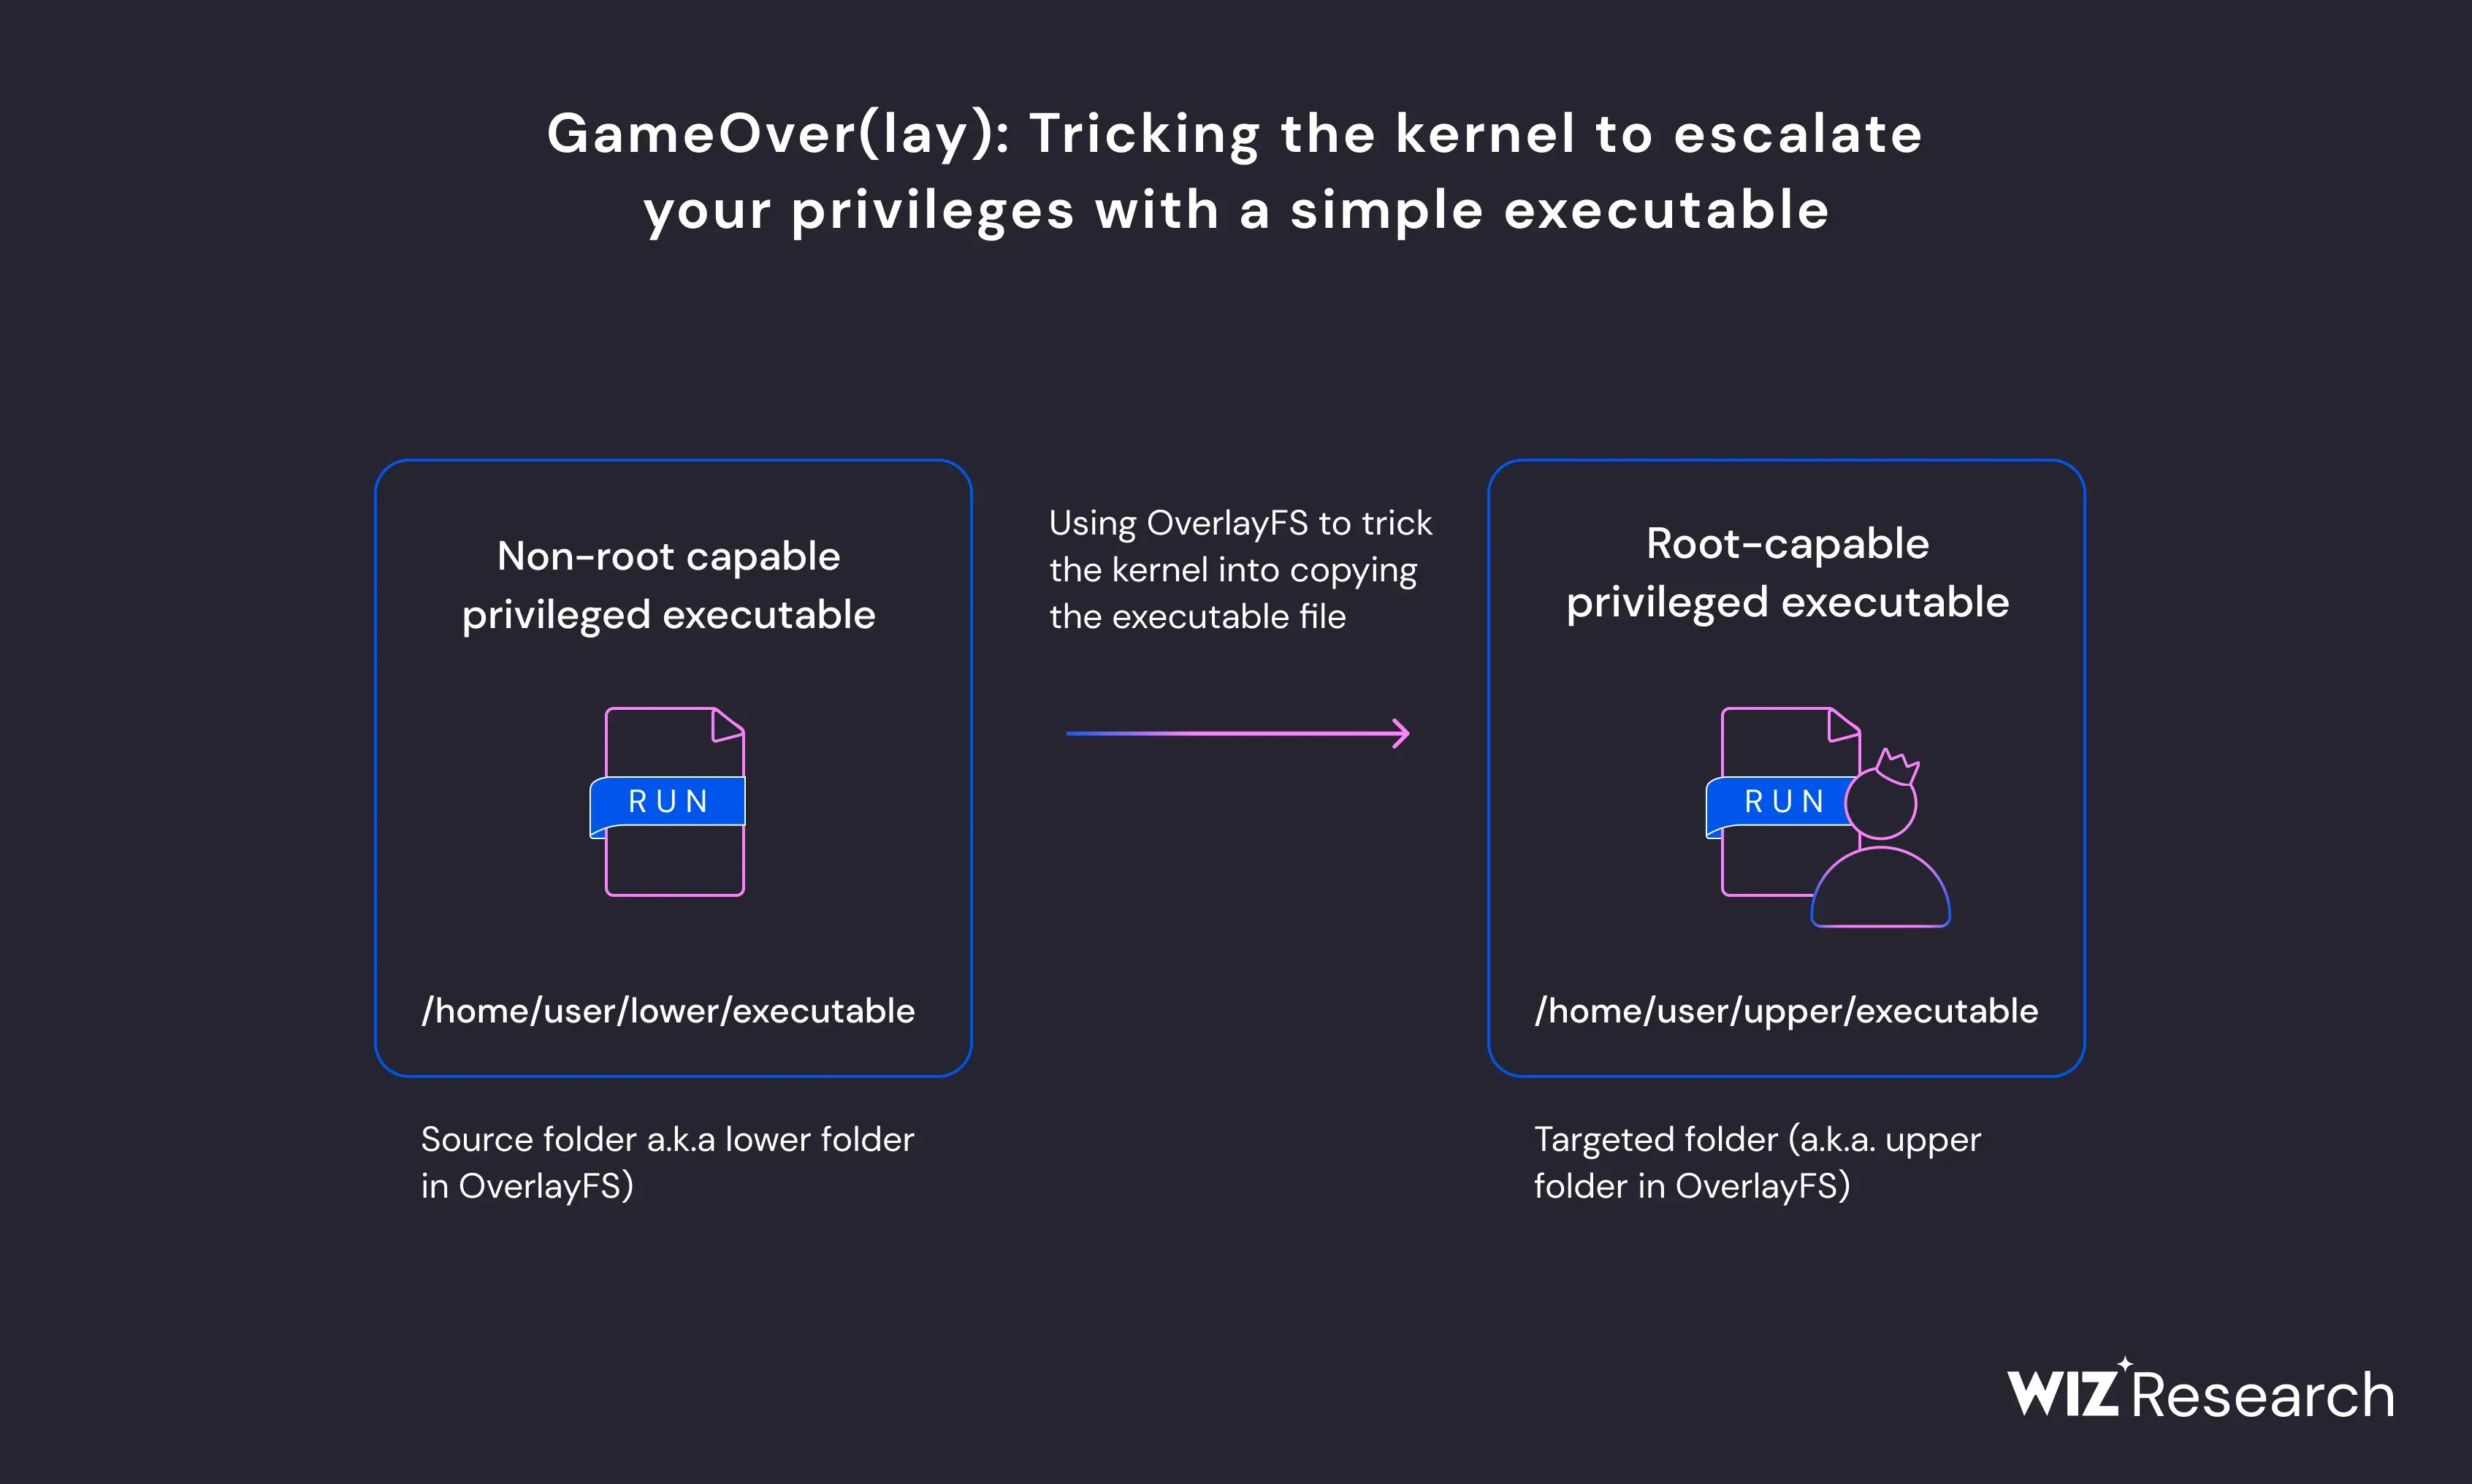 GameOver(lay) Vulnerabilities in Ubuntu